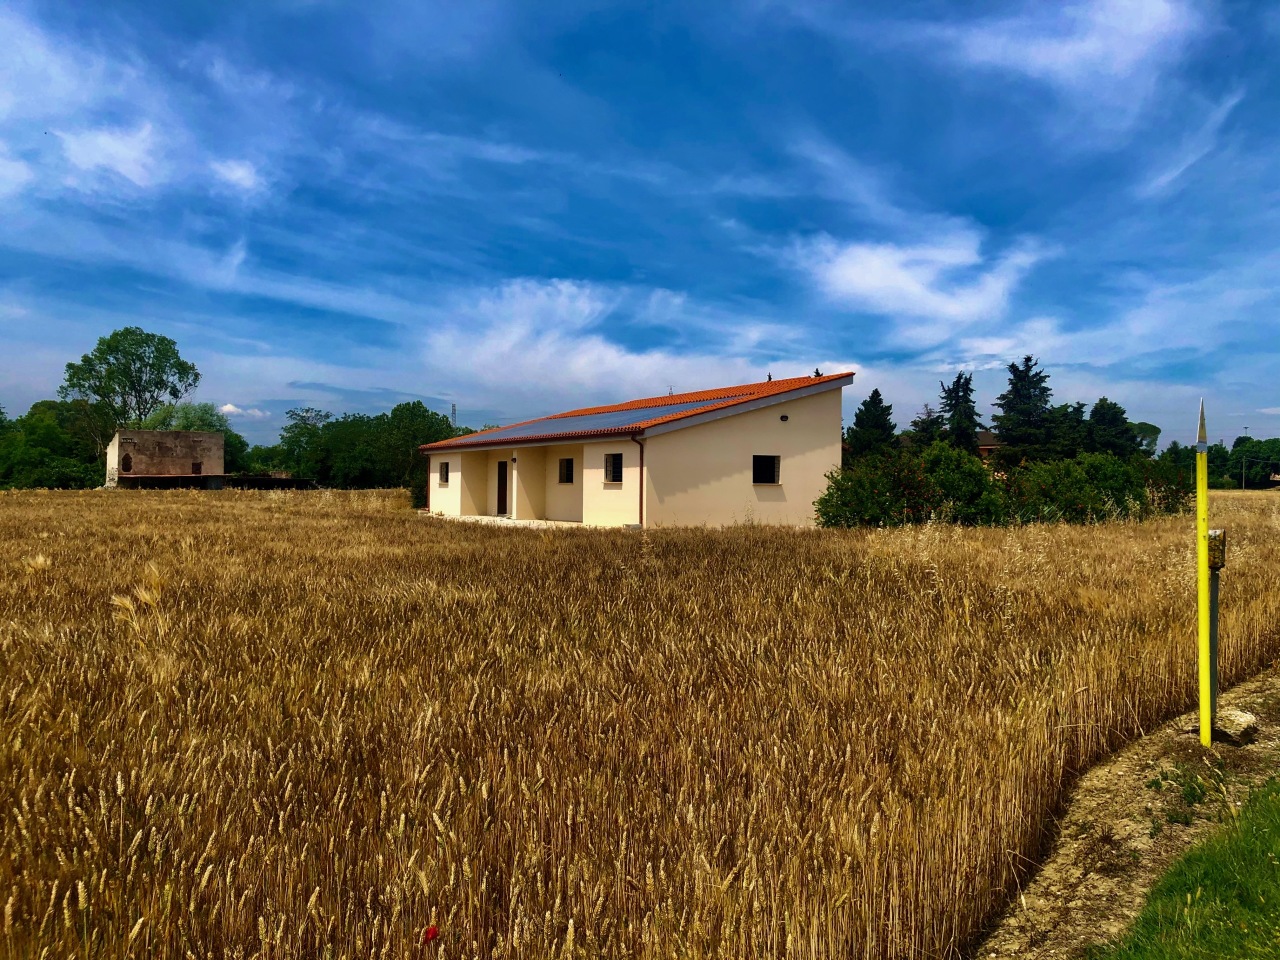 Terreno Agricolo in vendita a Jesi, 9999 locali, Trattative riservate | PortaleAgenzieImmobiliari.it